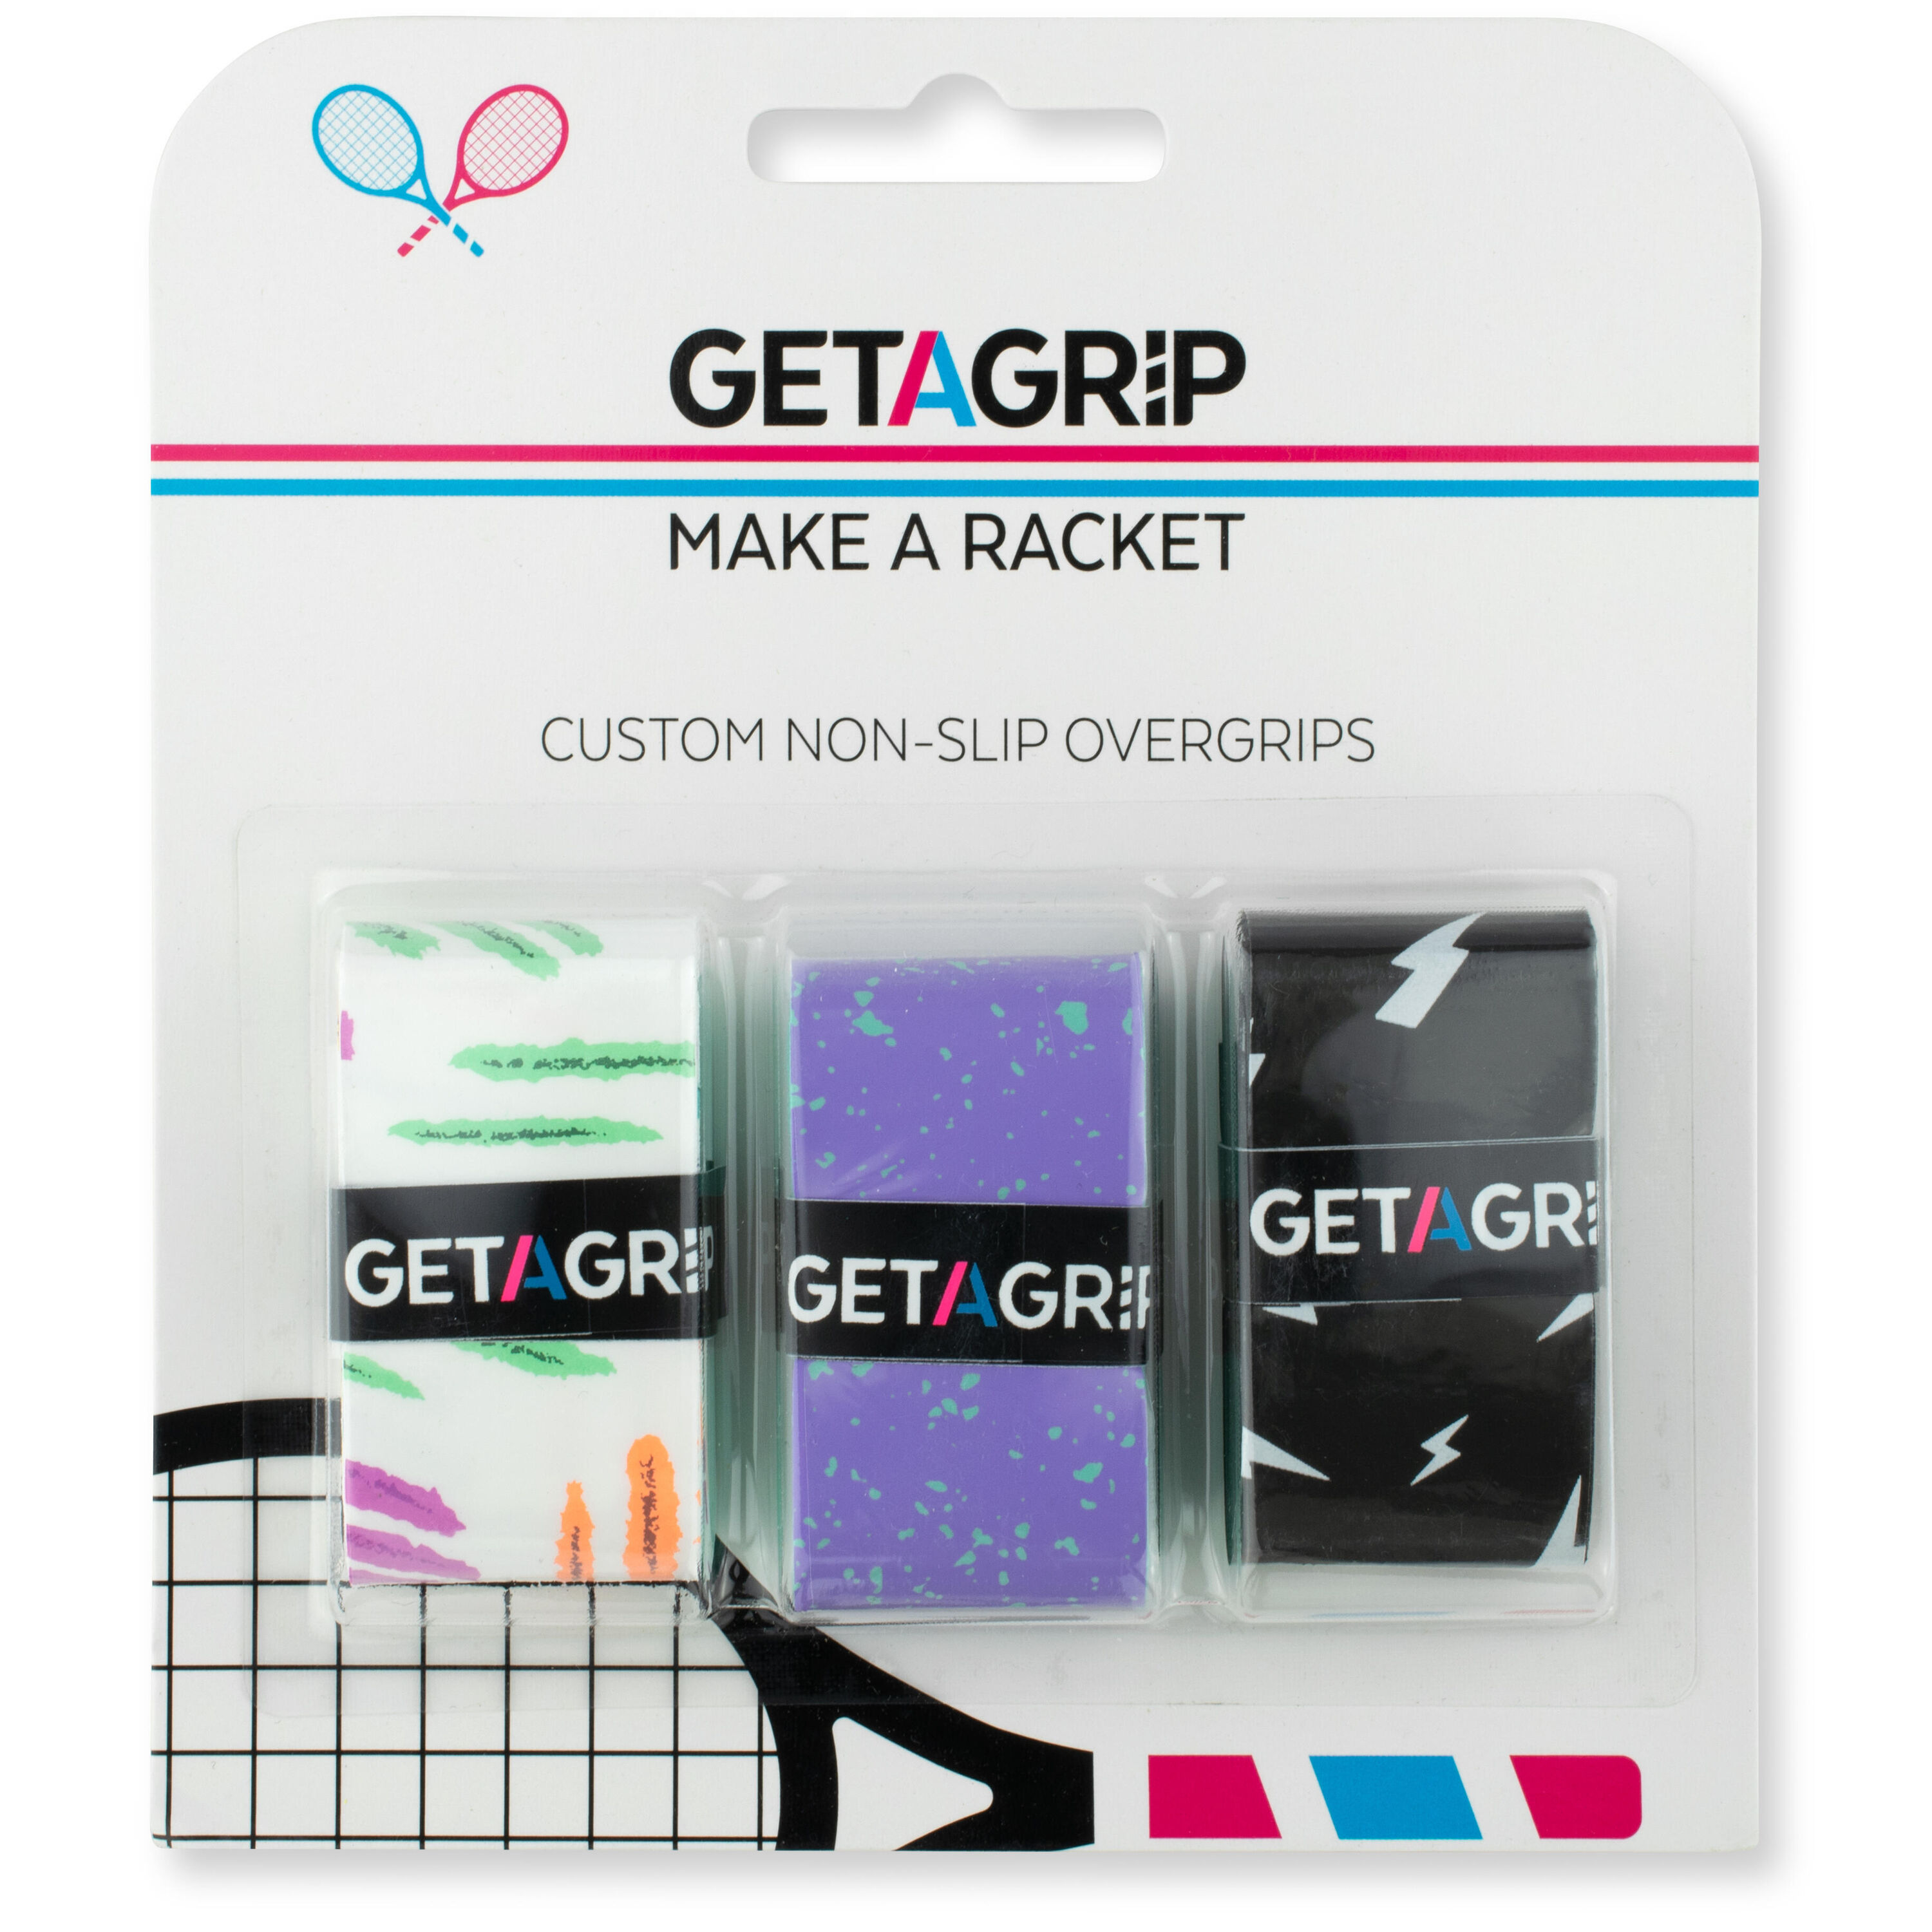 GET A GRIP Get A Grip Tennis Grips - Smash Hit Pack